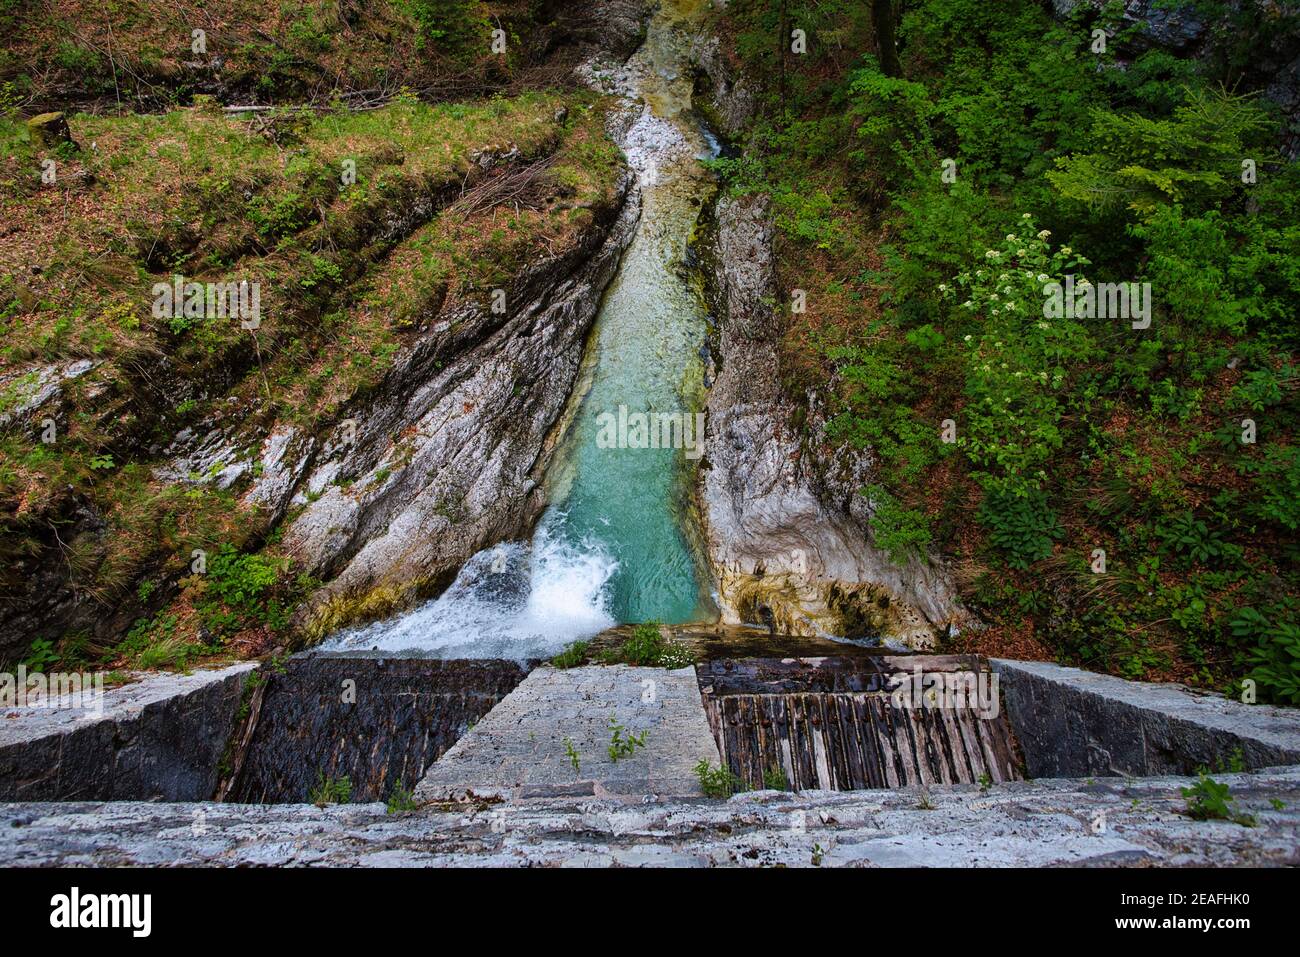 Barriere idriche, Klavze patrimonio mondiale dell'unesco a Idrija, Slovenia Foto Stock